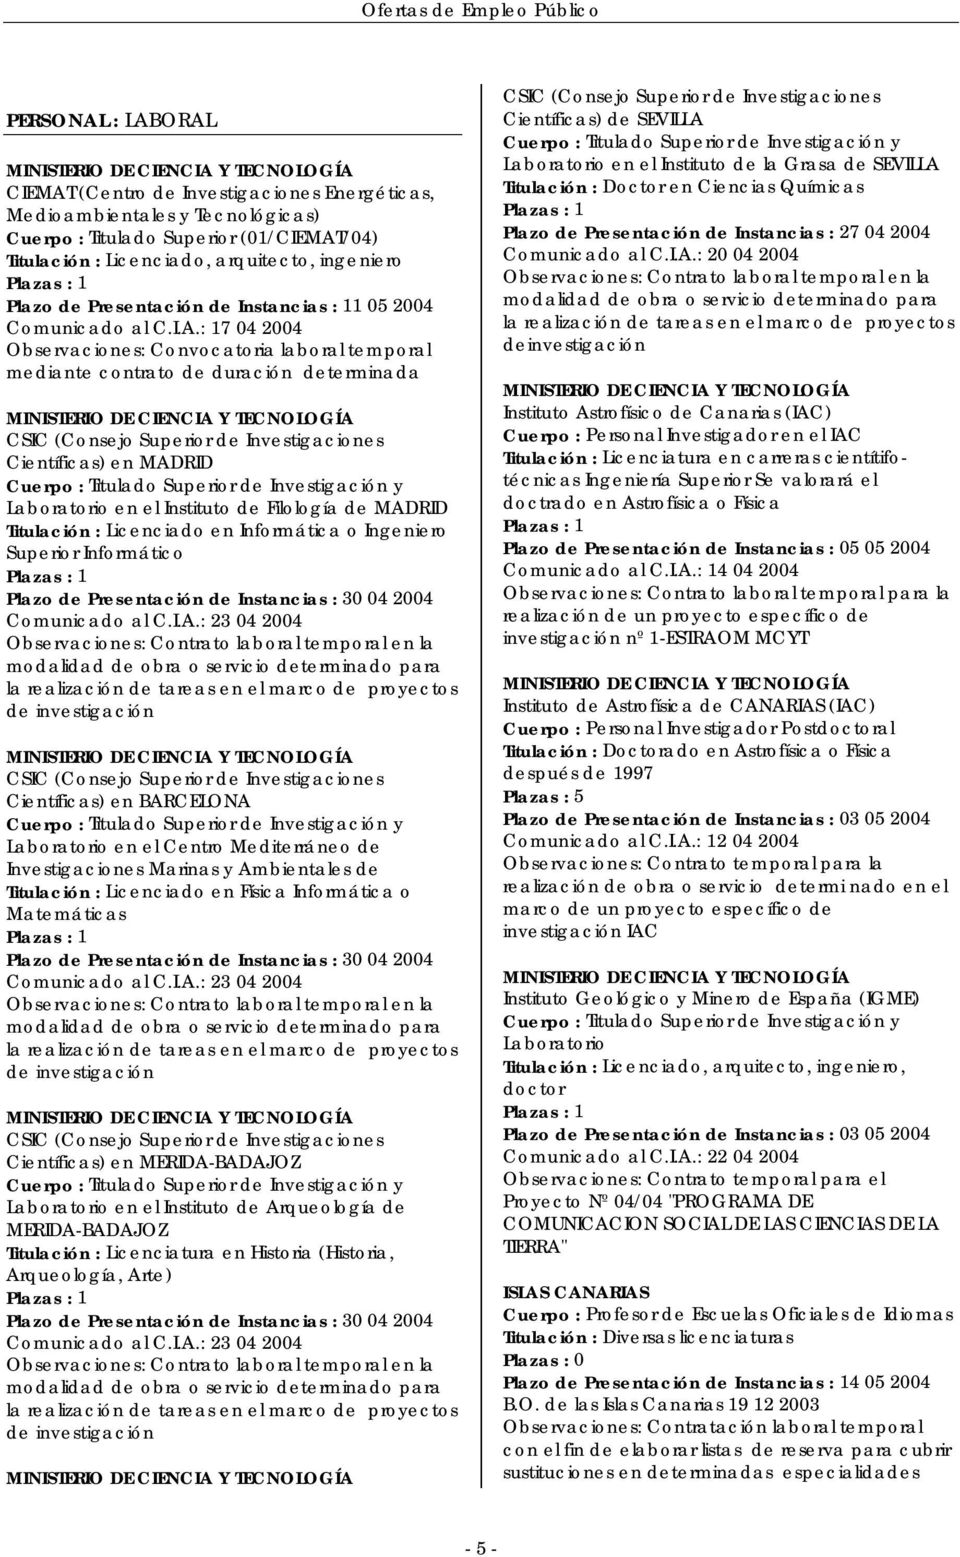 : 17 04 2004 Observaciones: Convocatoria laboral temporal mediante contrato de duración determinada CSIC (Consejo Superior de Investigaciones Científicas) en MADRID Cuerpo : Titulado Superior de